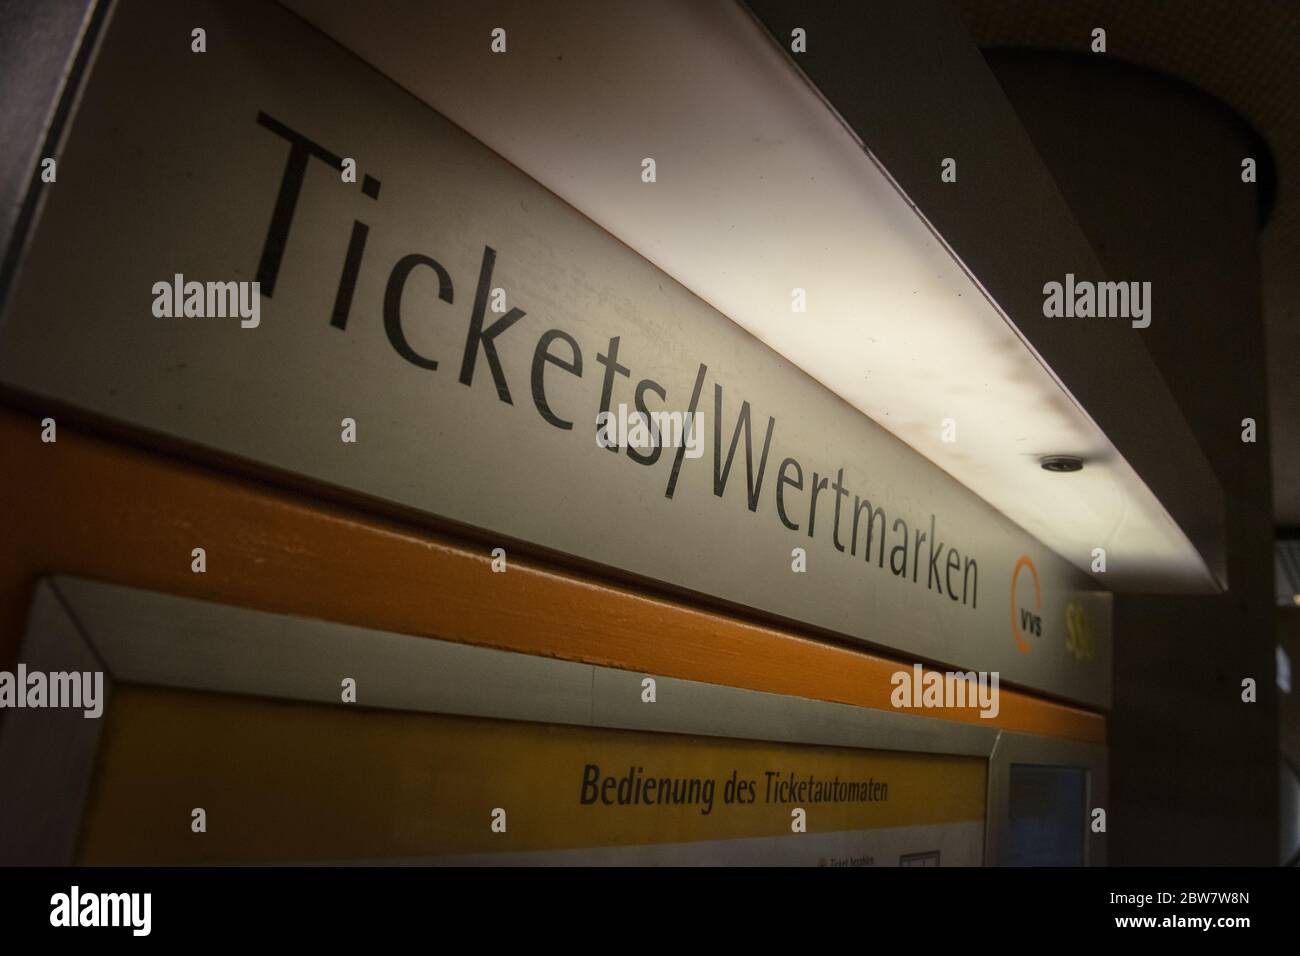 Ticketautomat der VVS am Schlossplatz in Stuttgart Stock Photo